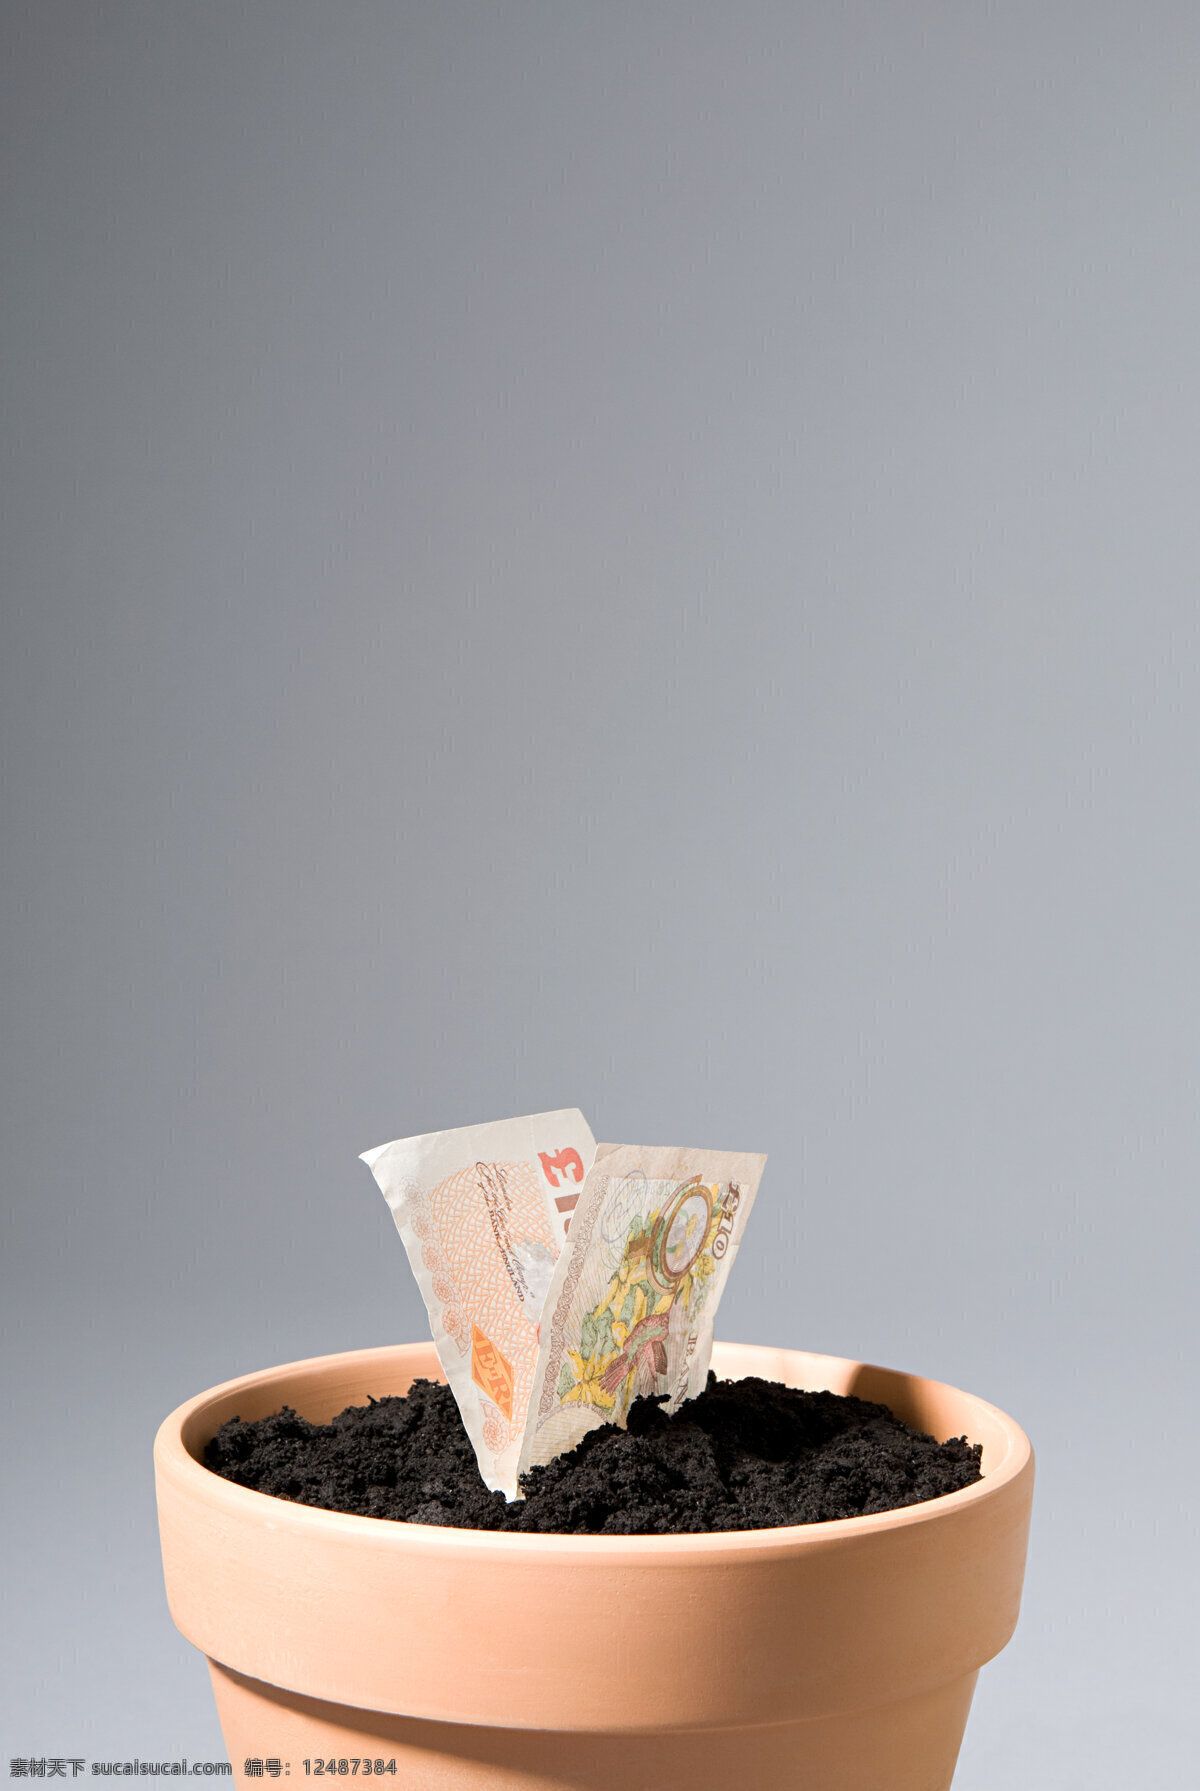 花盆 里 生长 两 张 纸 塑料 橙色 黑色土壤 土 泥 外钞 金钱 画面 图案 灰色背景 照片 高清大图 高清图片 花草树木 生物世界